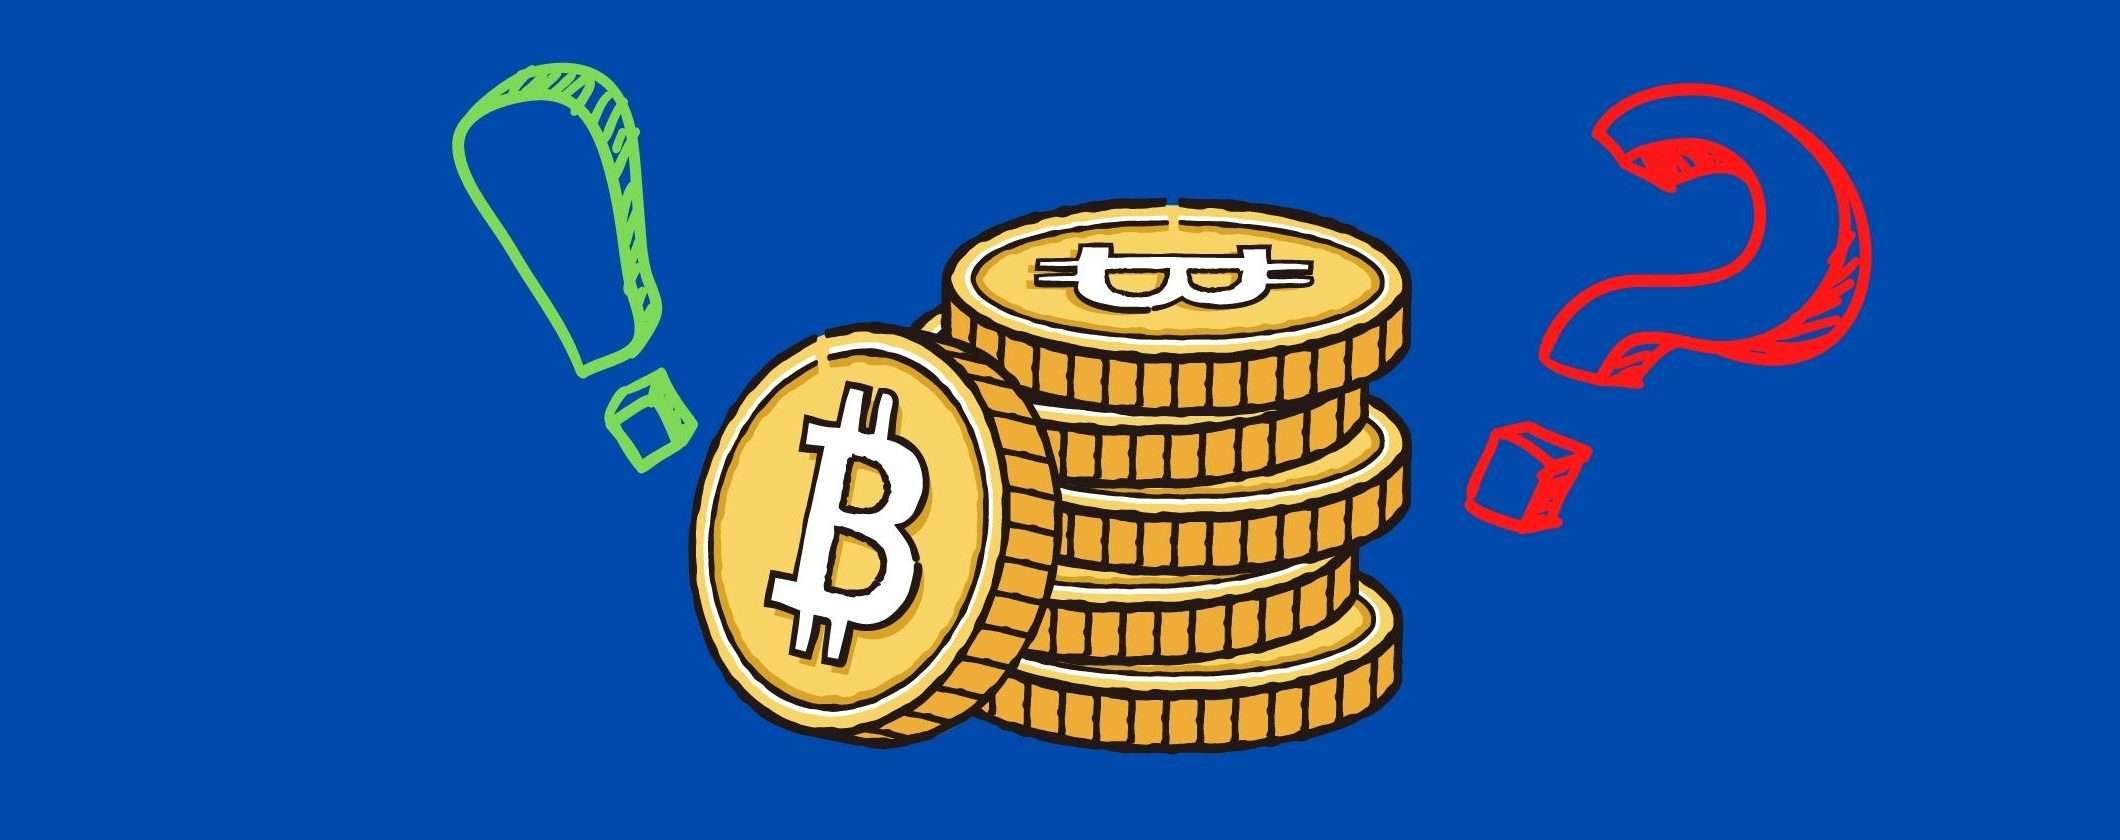 Bitcoin torna sopra i 19 mila: meglio acquistare o vendere?